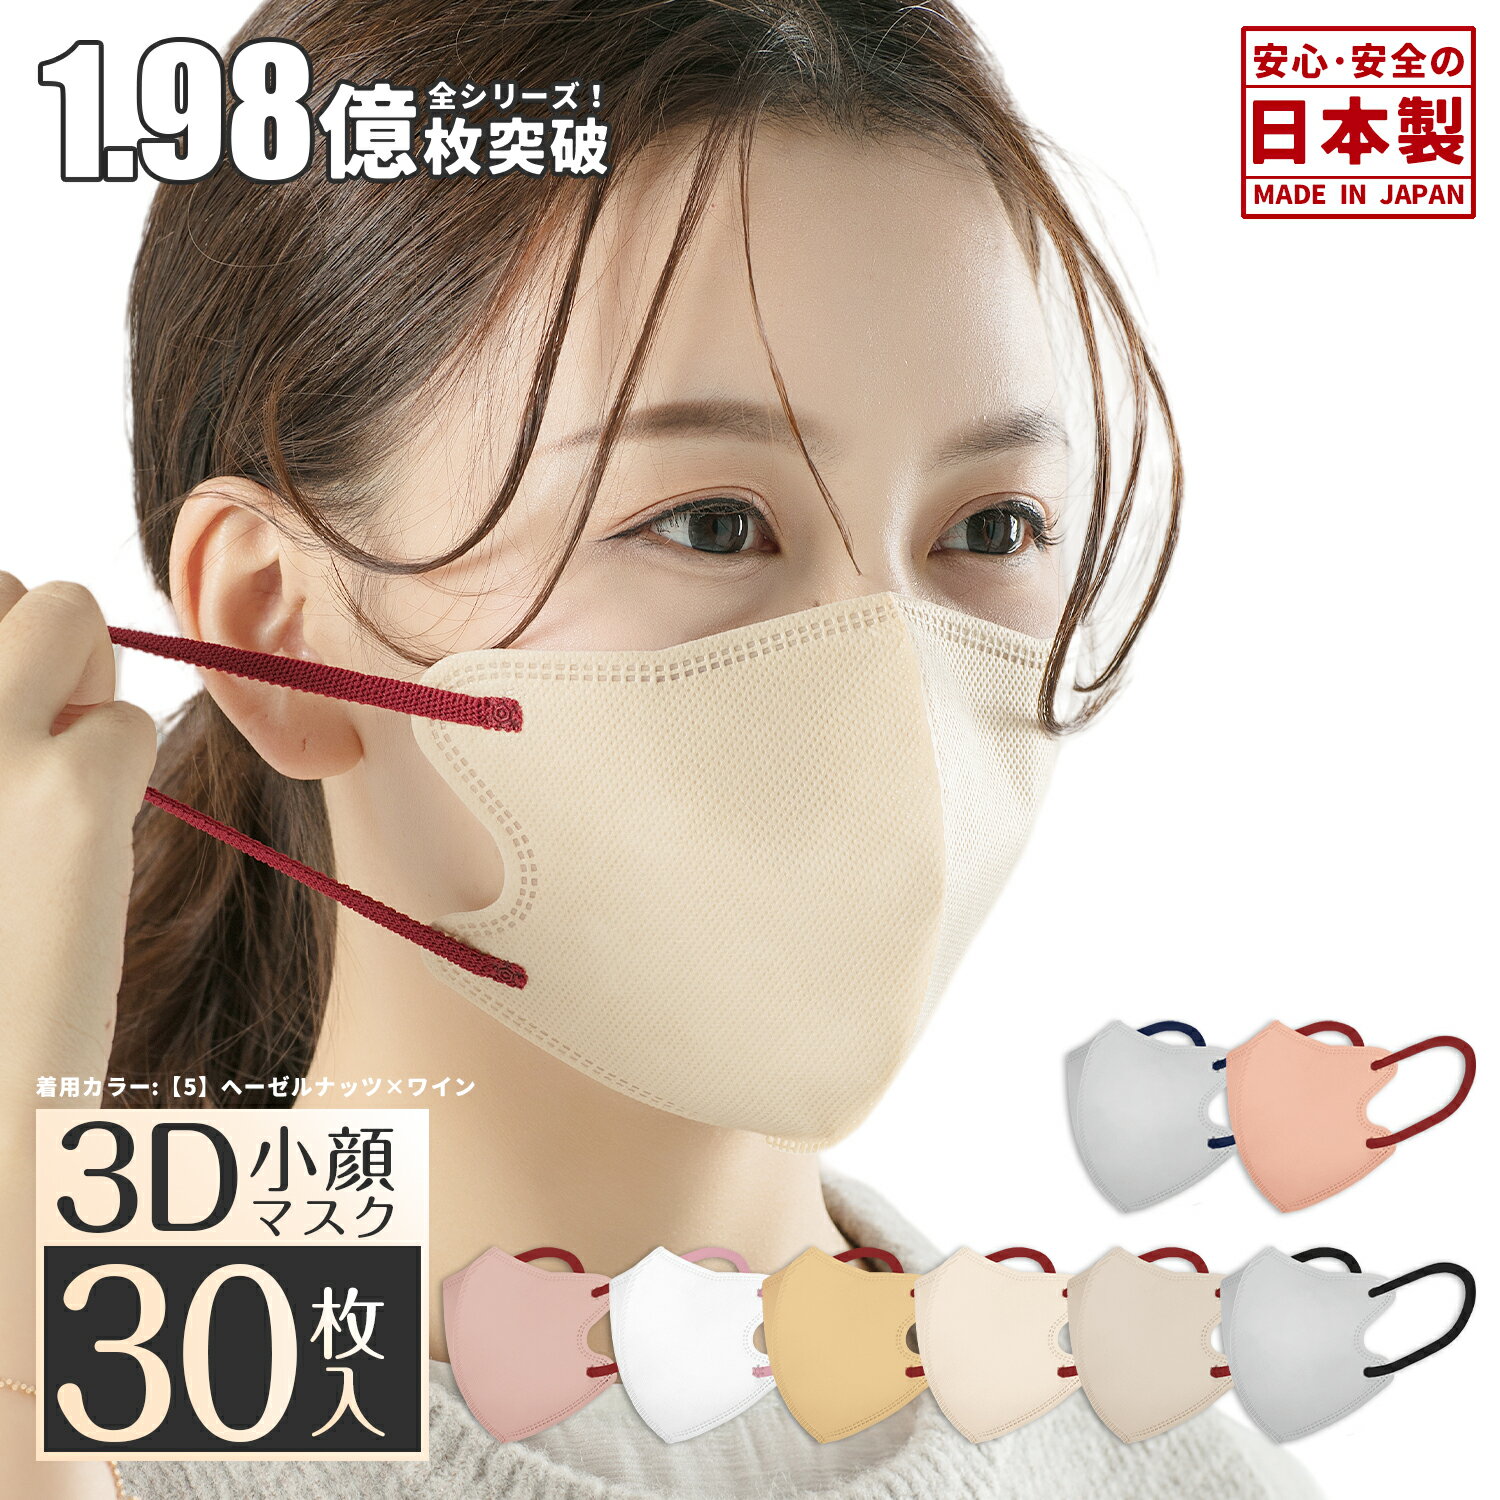 【クーポンで最大半額以下399円】日本製 立体マスク バイカラー マスク 花粉対策 30枚 3dマスク 30枚 小さめ 子供 不織布 小顔マスク 血色マスク 大人用 快適ますく 3dマスク カラーマスク 3D …